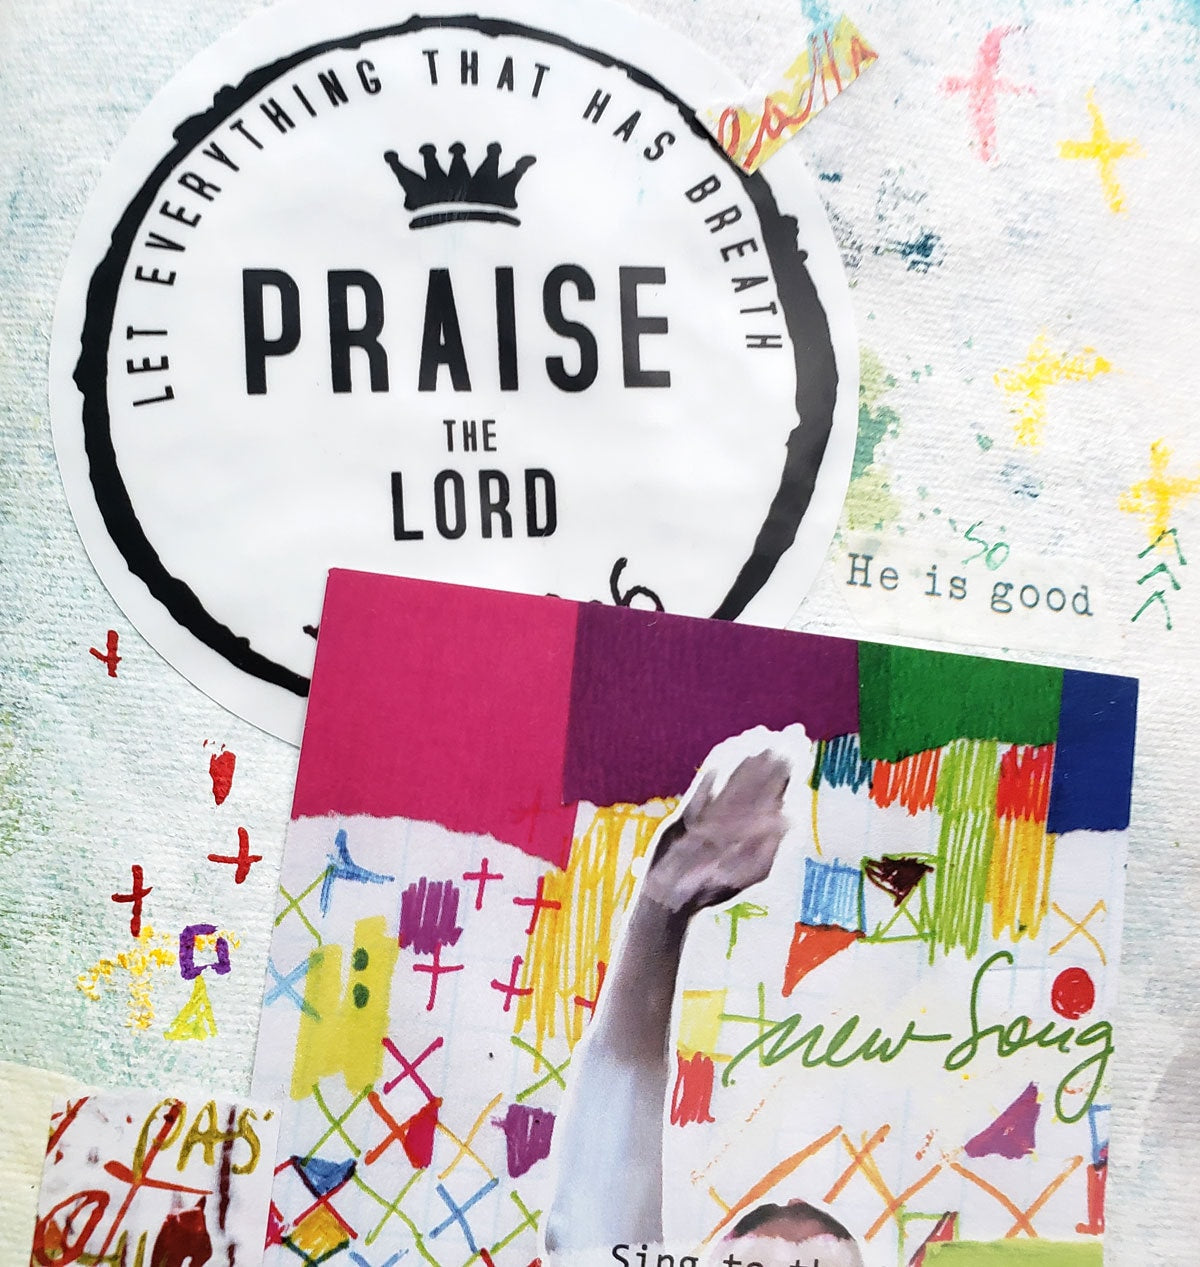 Praise - sticker